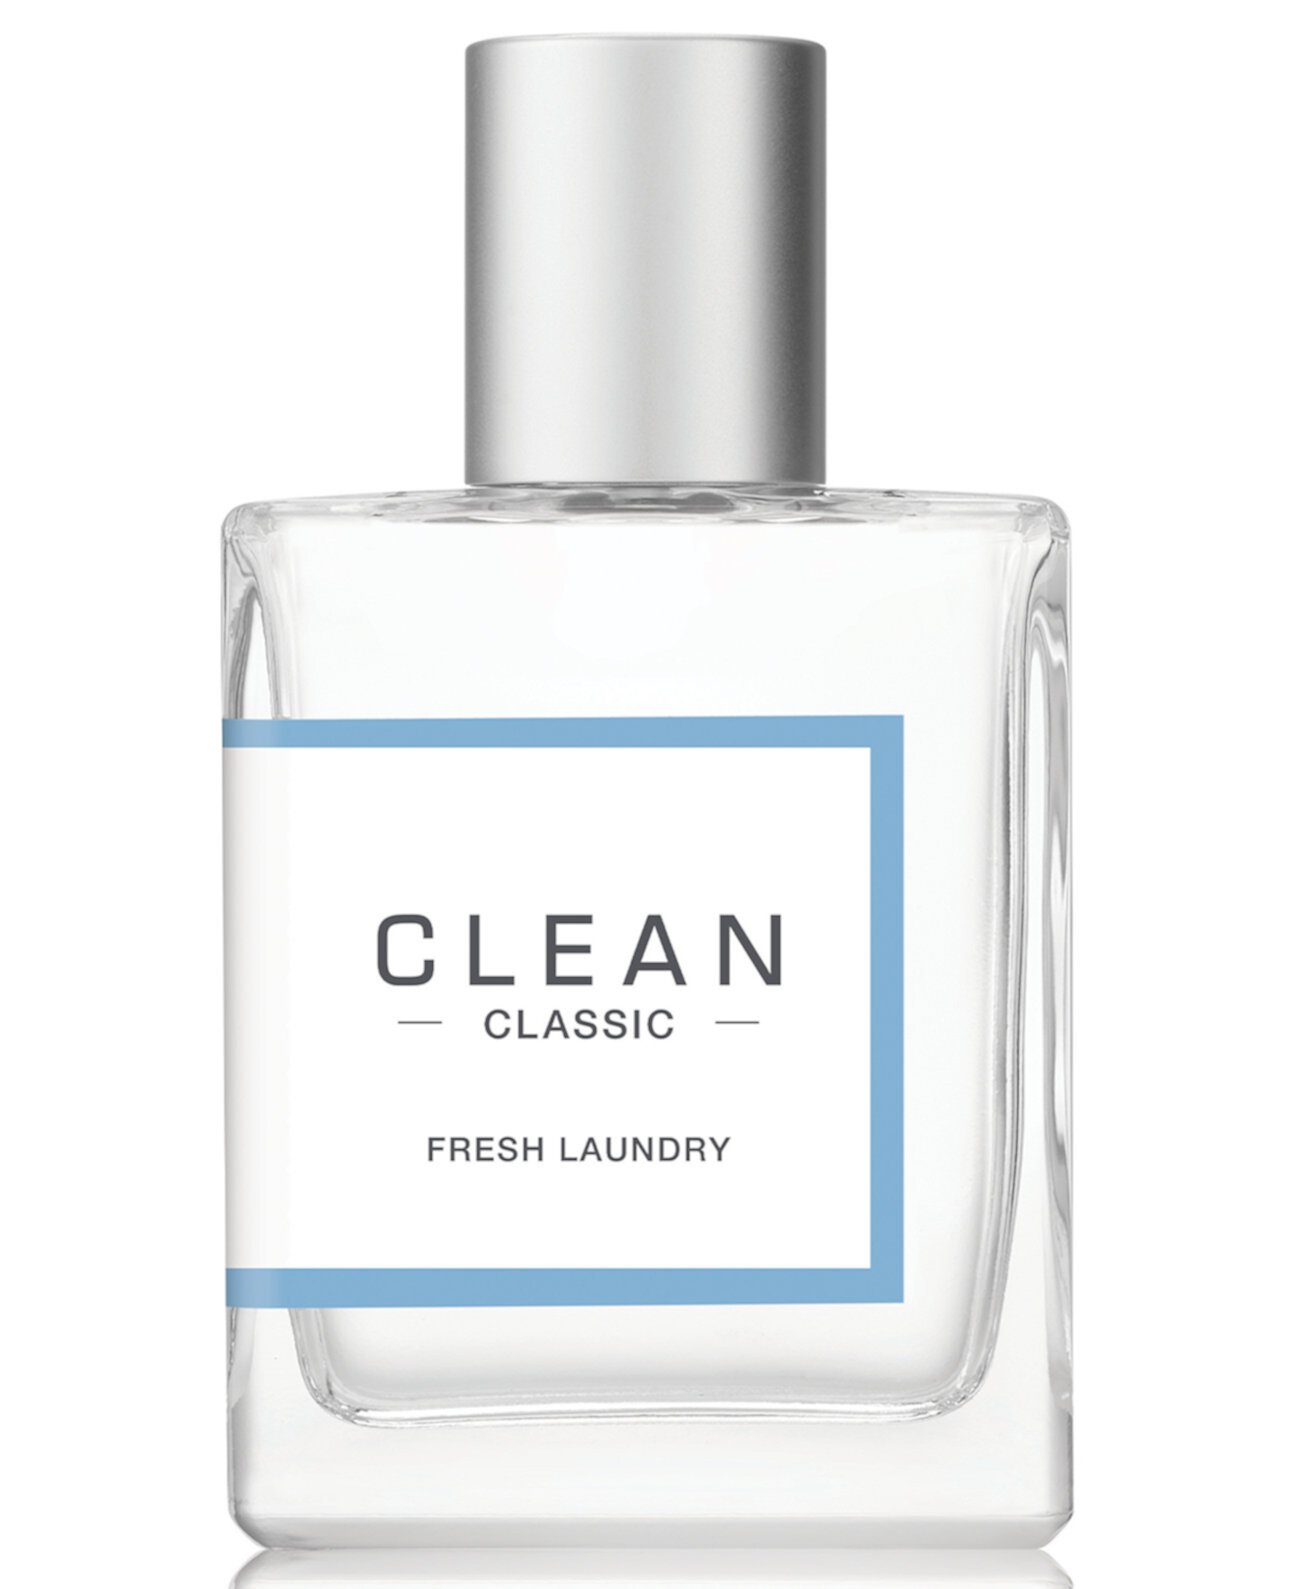 Classic Fresh Laundry Fragrance Spray, 2 унции. CLEAN Fragrance